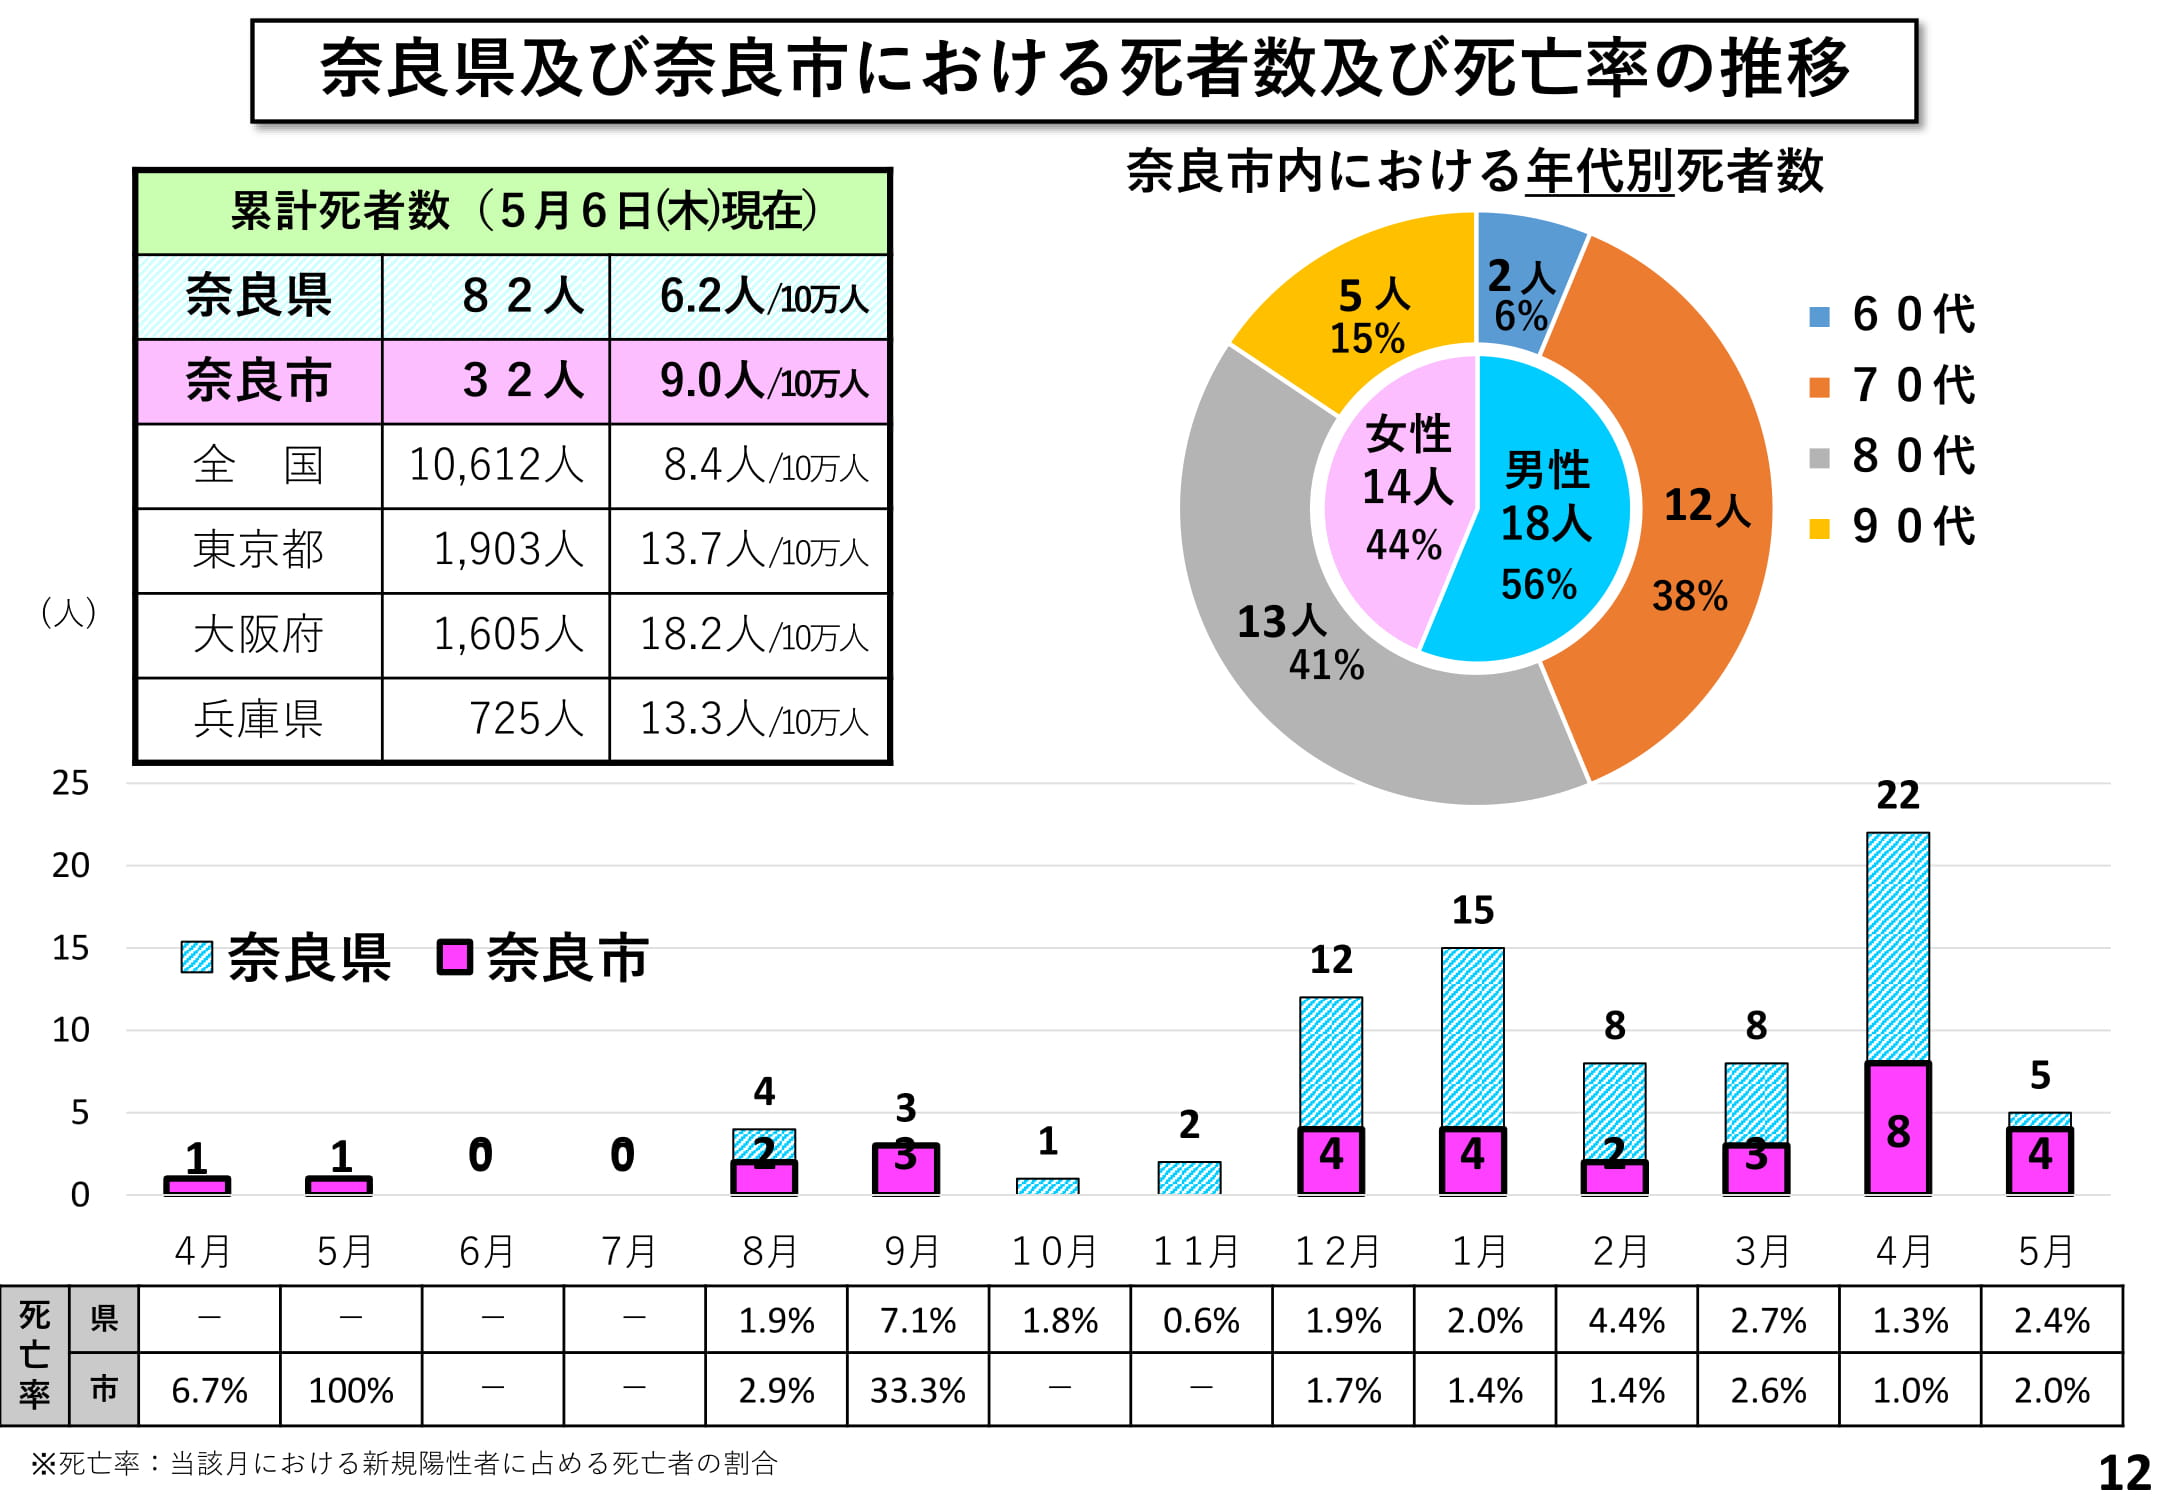 奈良県及び奈良市における死亡者数及び死亡率の推移